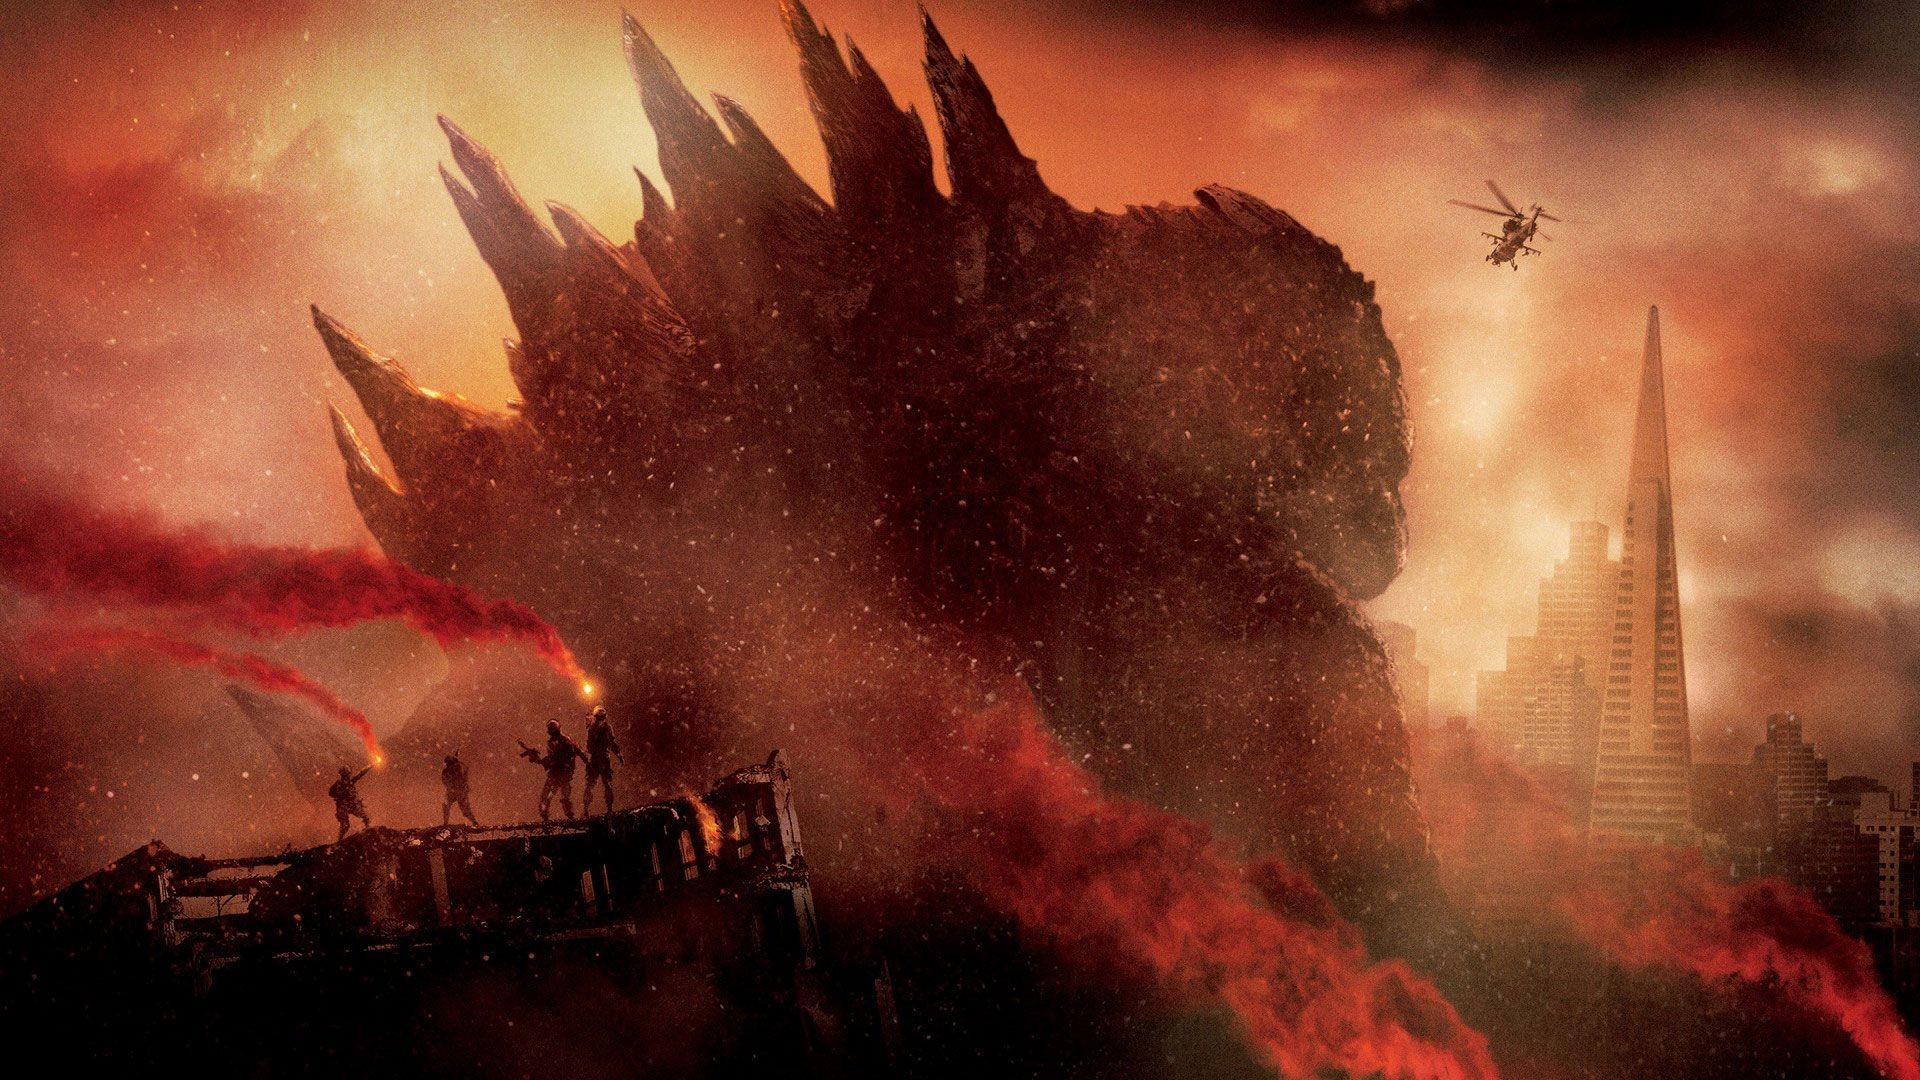 1920x1080 godzilla 2014 cover photo | Godzilla 2014 HD Wallpaper  Godzilla  Movie 2014 HD, iPhone .